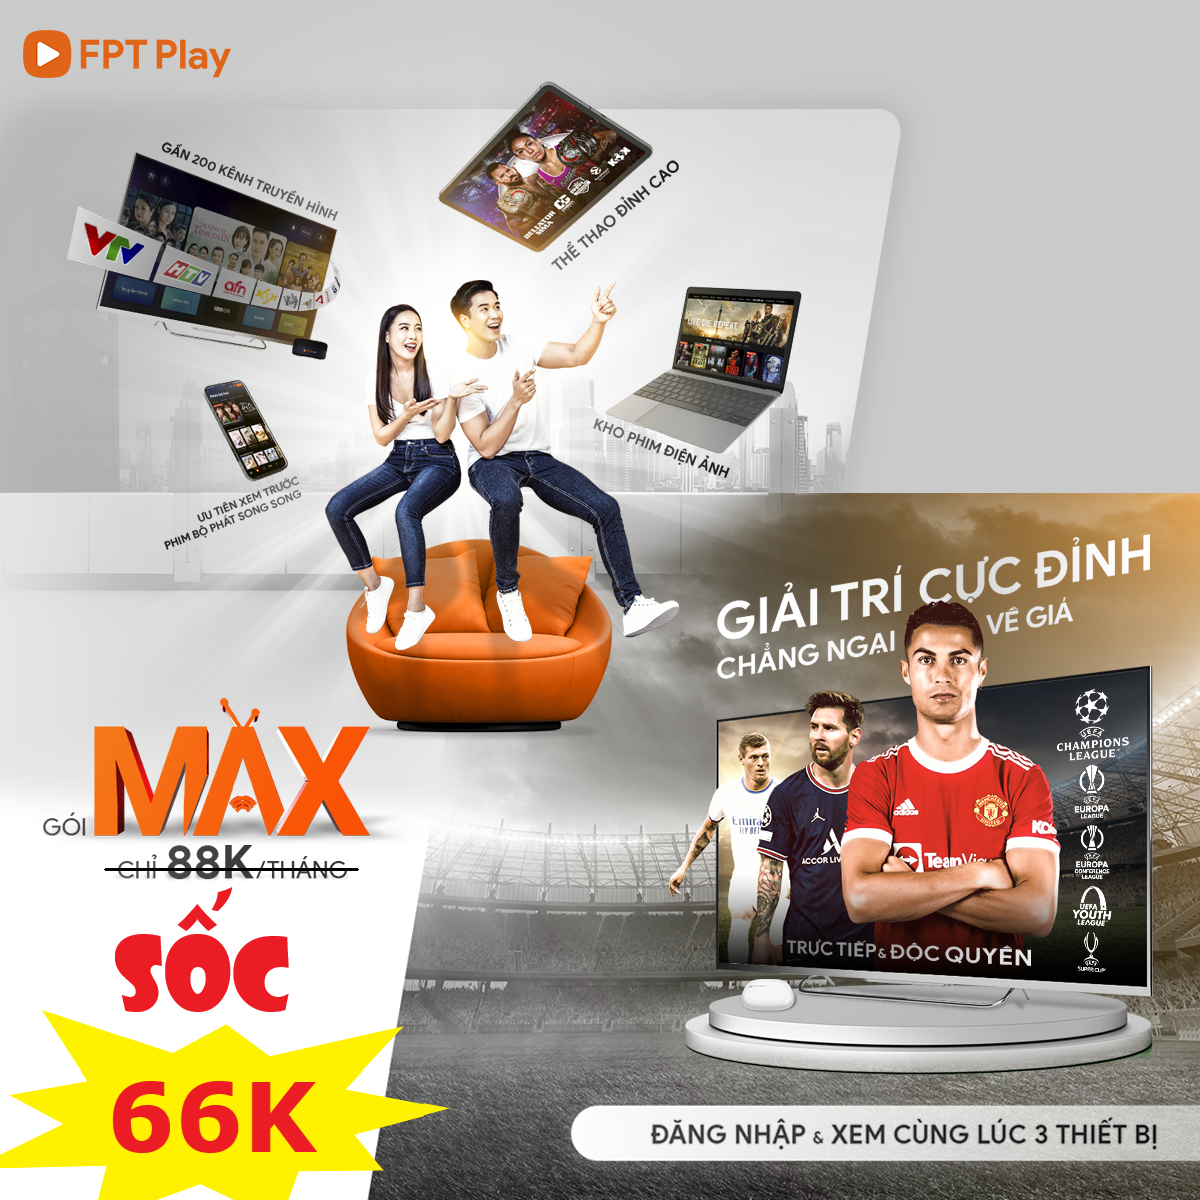 Gói Max FPT Play dịch vụ xem truyền hình chỉ với 88.000đ/tháng 13